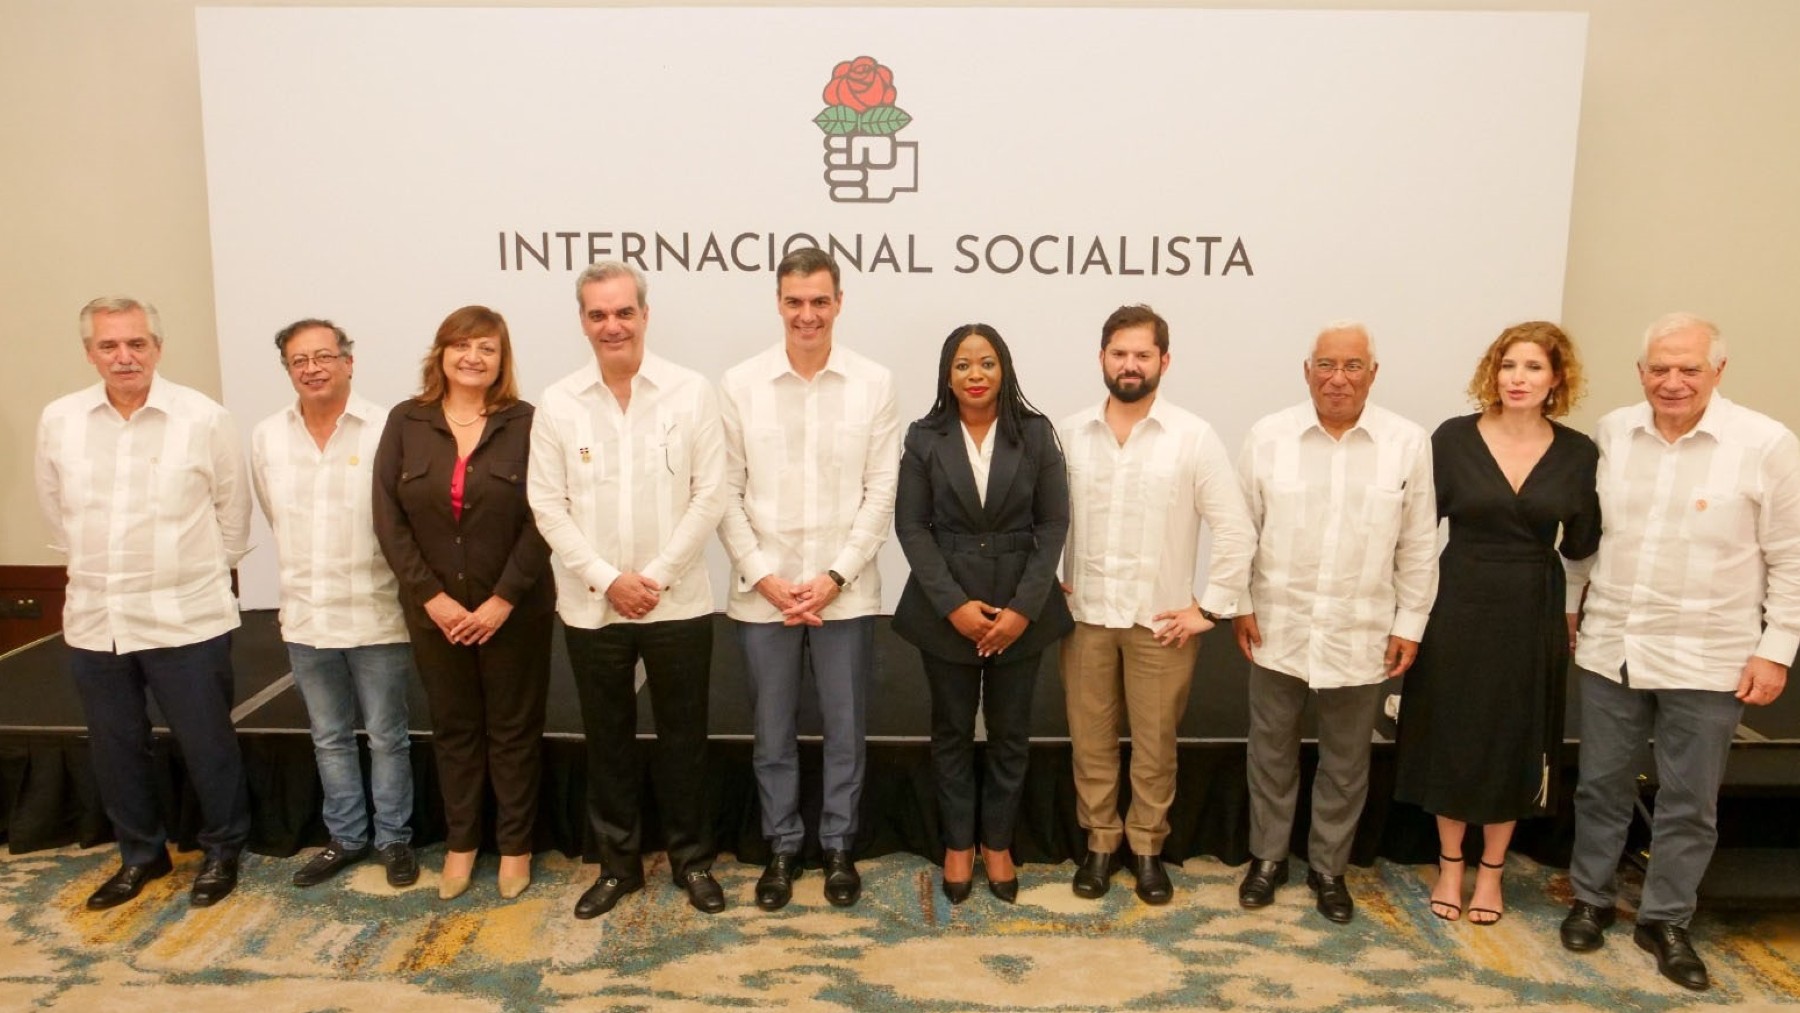 Pedro Sánchez junto a otros líderes progresistas iberoamericanos en el marco de un encuentro de la Internacional Socialista.